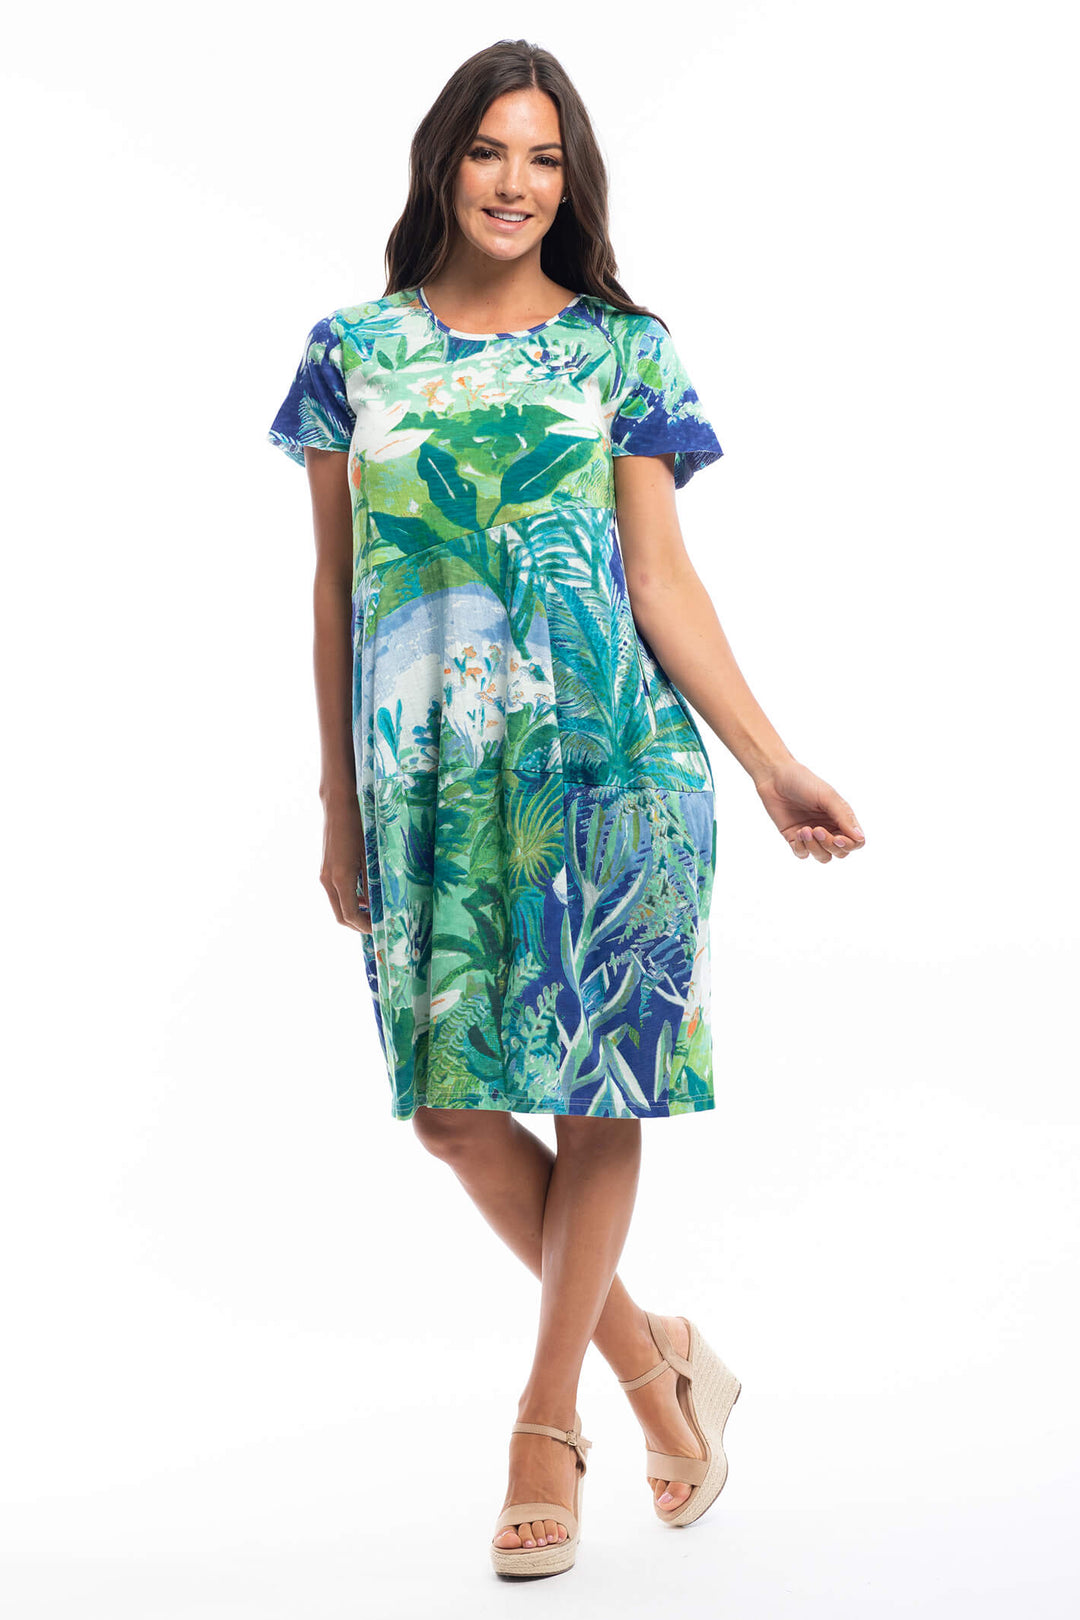 Orientique 21792 Secret Island Aqua Bubble Knit Short Sleeve Dress - Shiley Allum Boutique